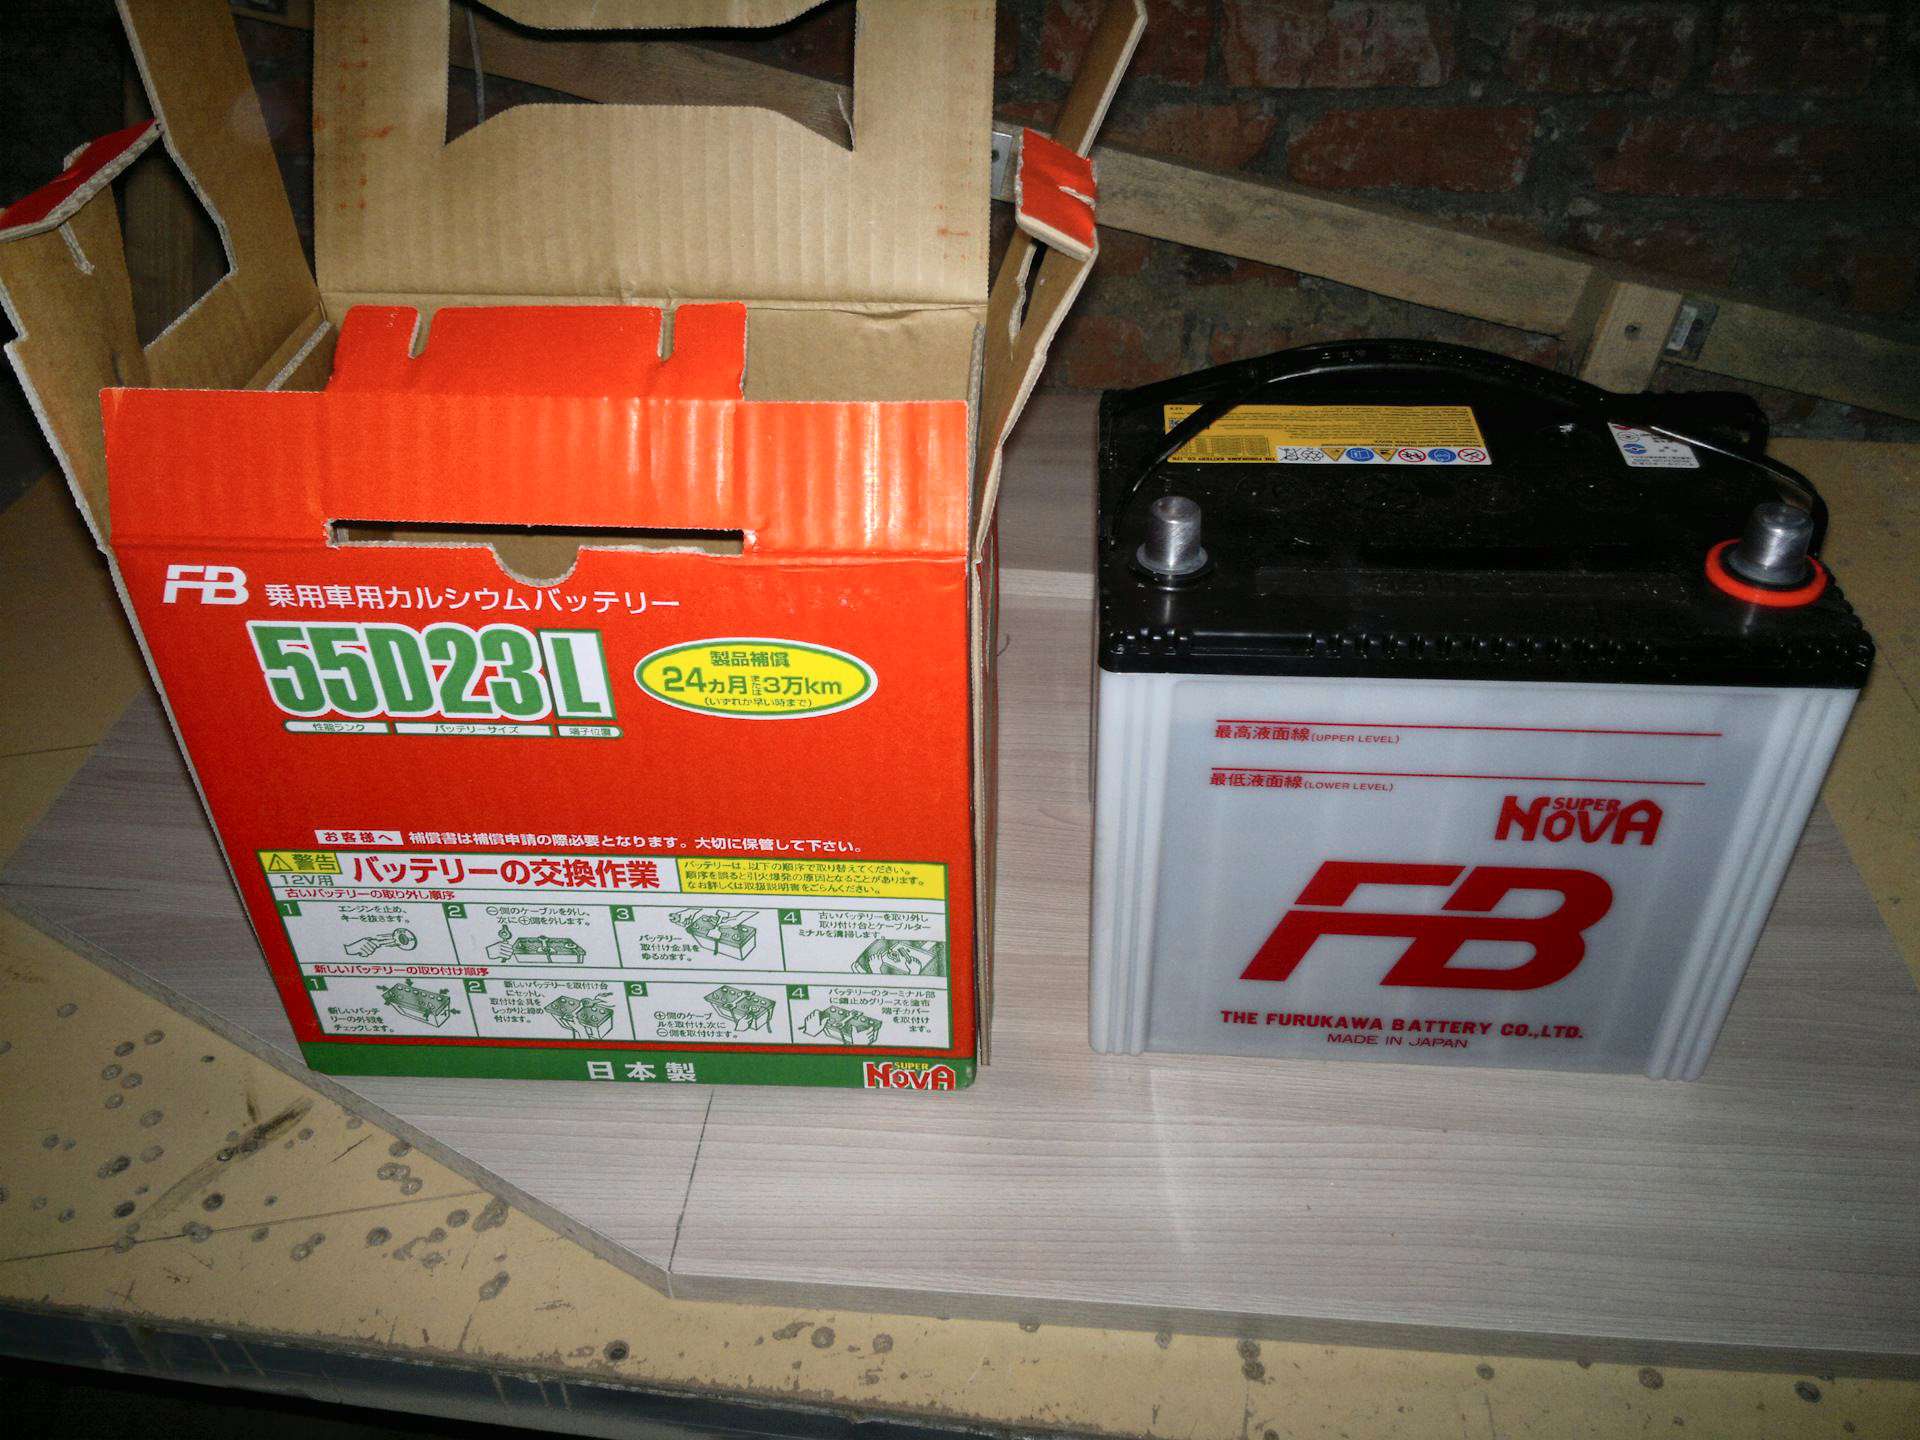 Furukawa battery fb. Furukawa Battery 55d23l. Аккумулятор fb super Nova 55d23l. 55d23l MF аккумулятор Furukawa. S 55 D 23l аккумулятор Furukawa.